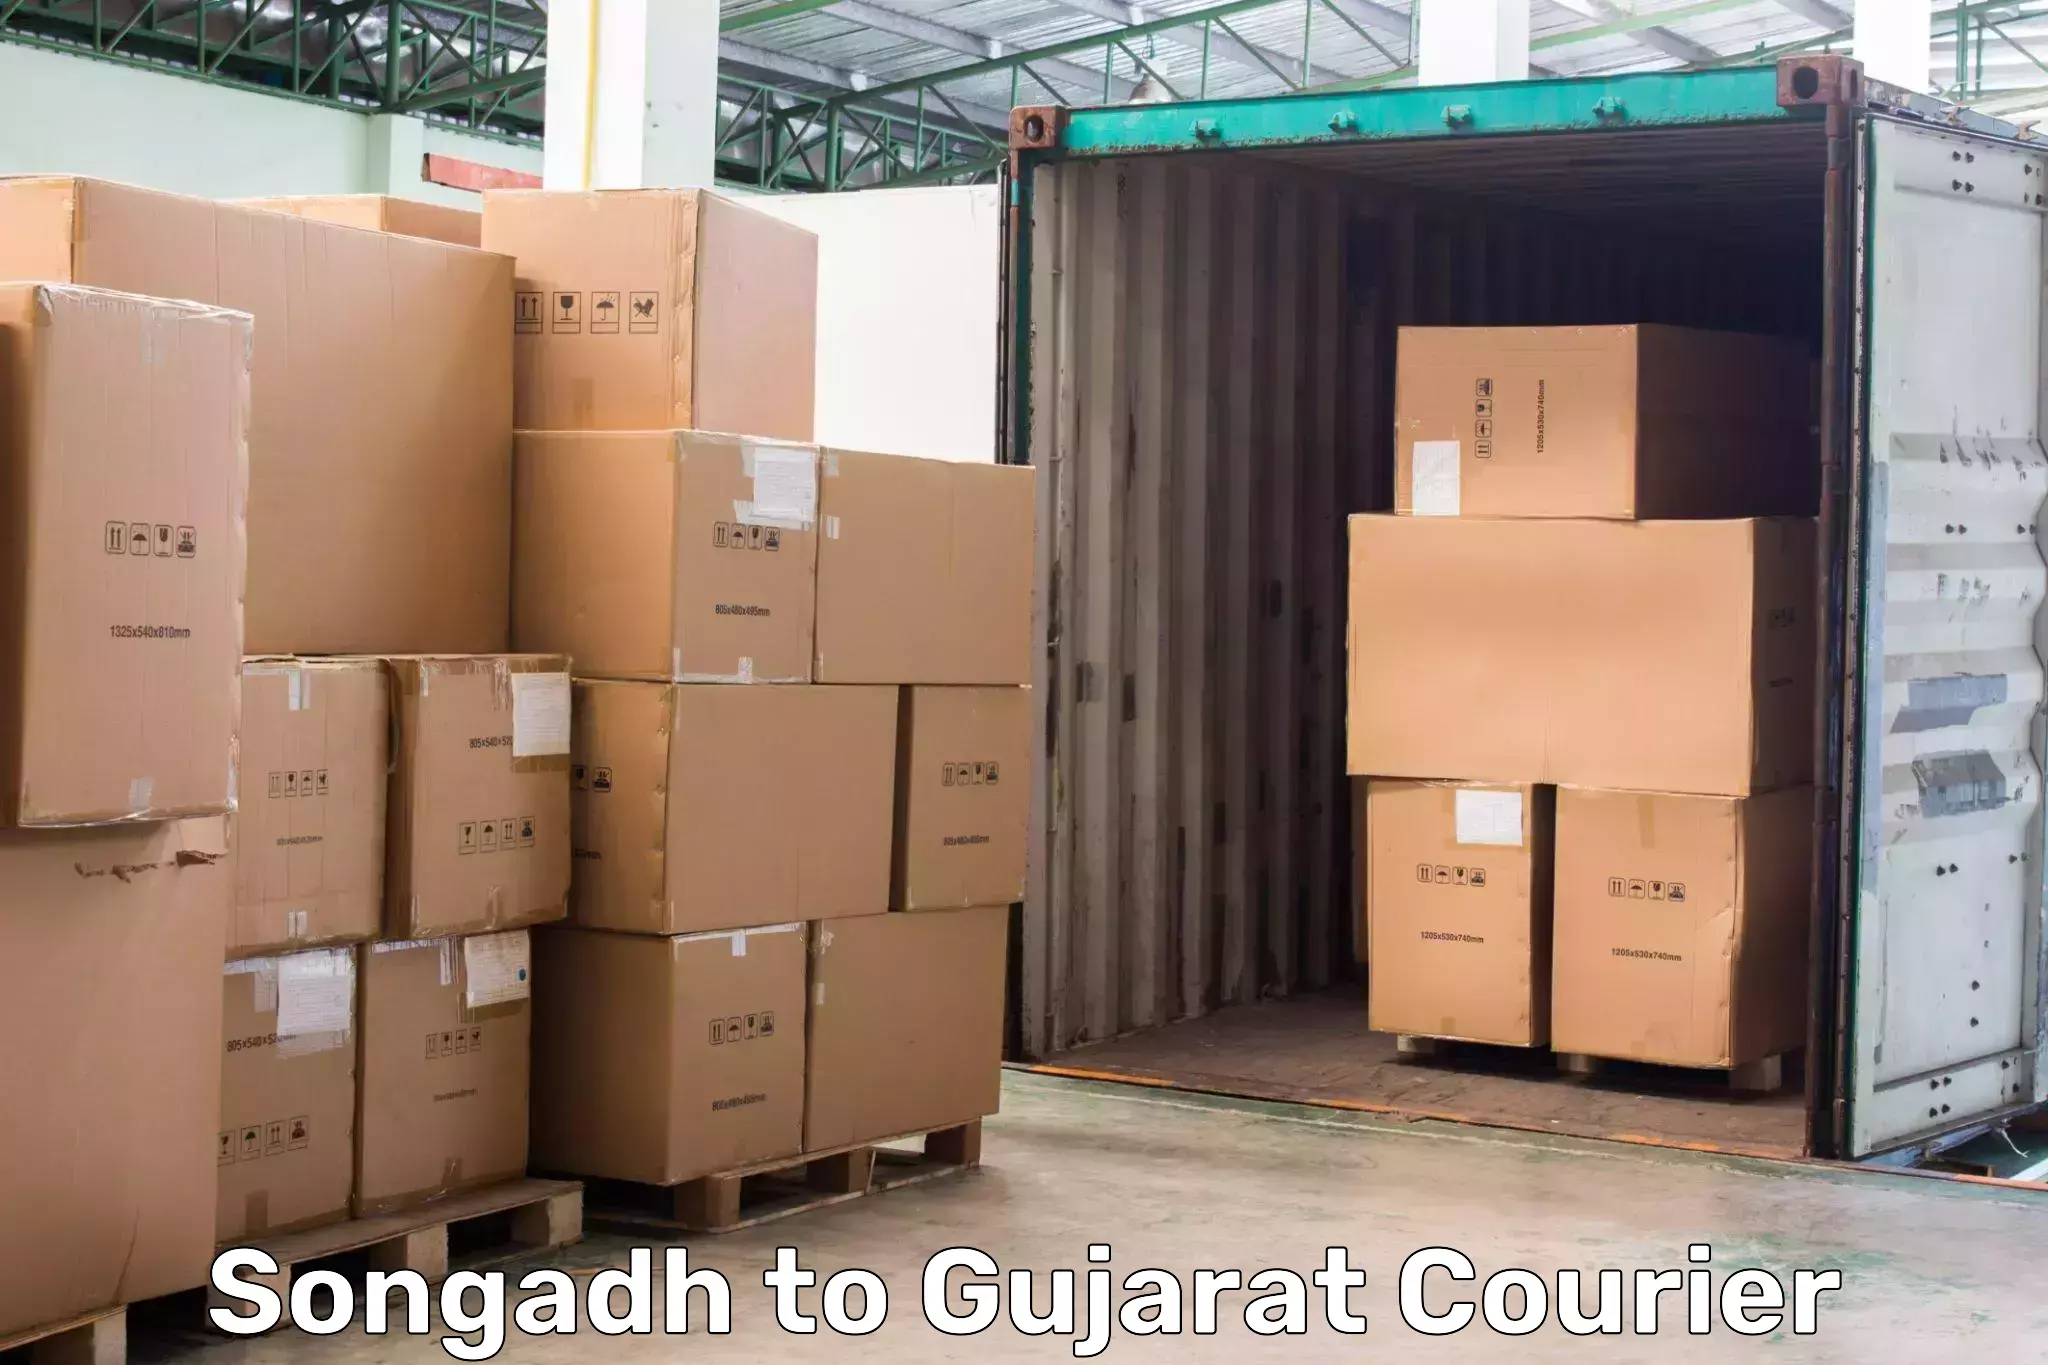 Air courier services Songadh to Gandhinagar